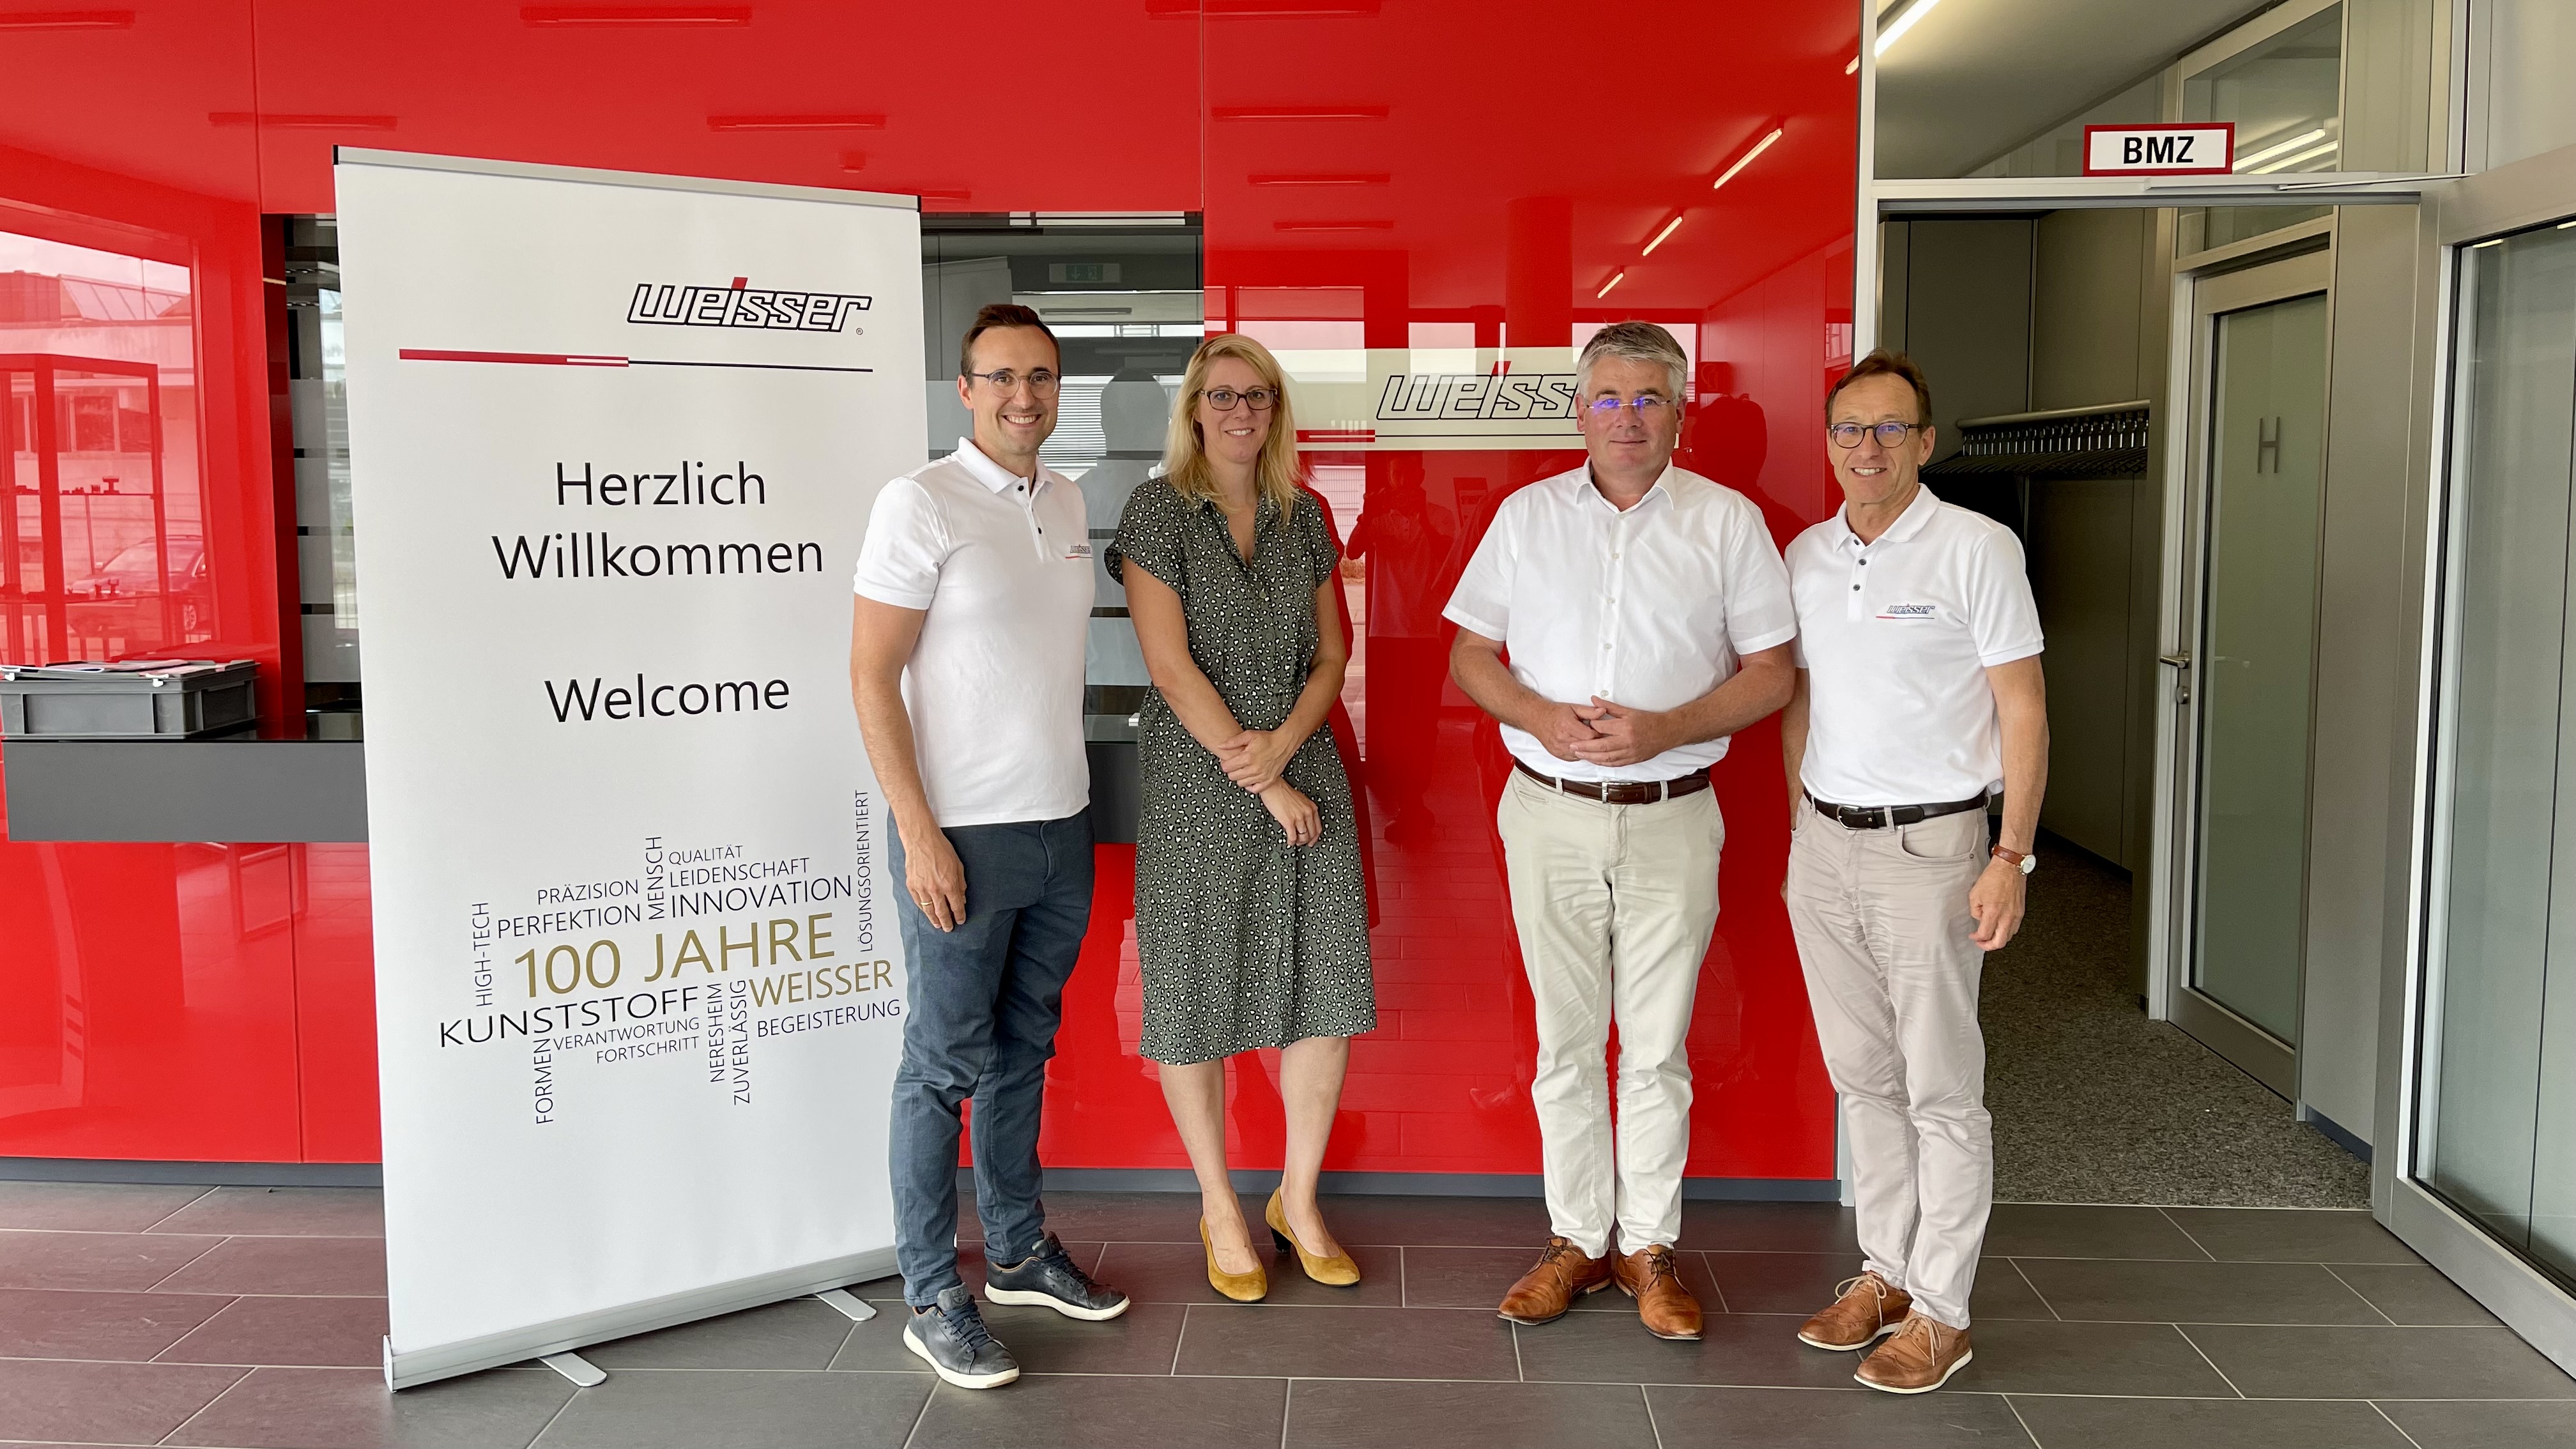 Dr. Alexander Starnecker, Heike Brucker, Winfried Mack und Manfred Starnecker beim Besuch der Firma Weisser Spulenkörper in Neresheim 